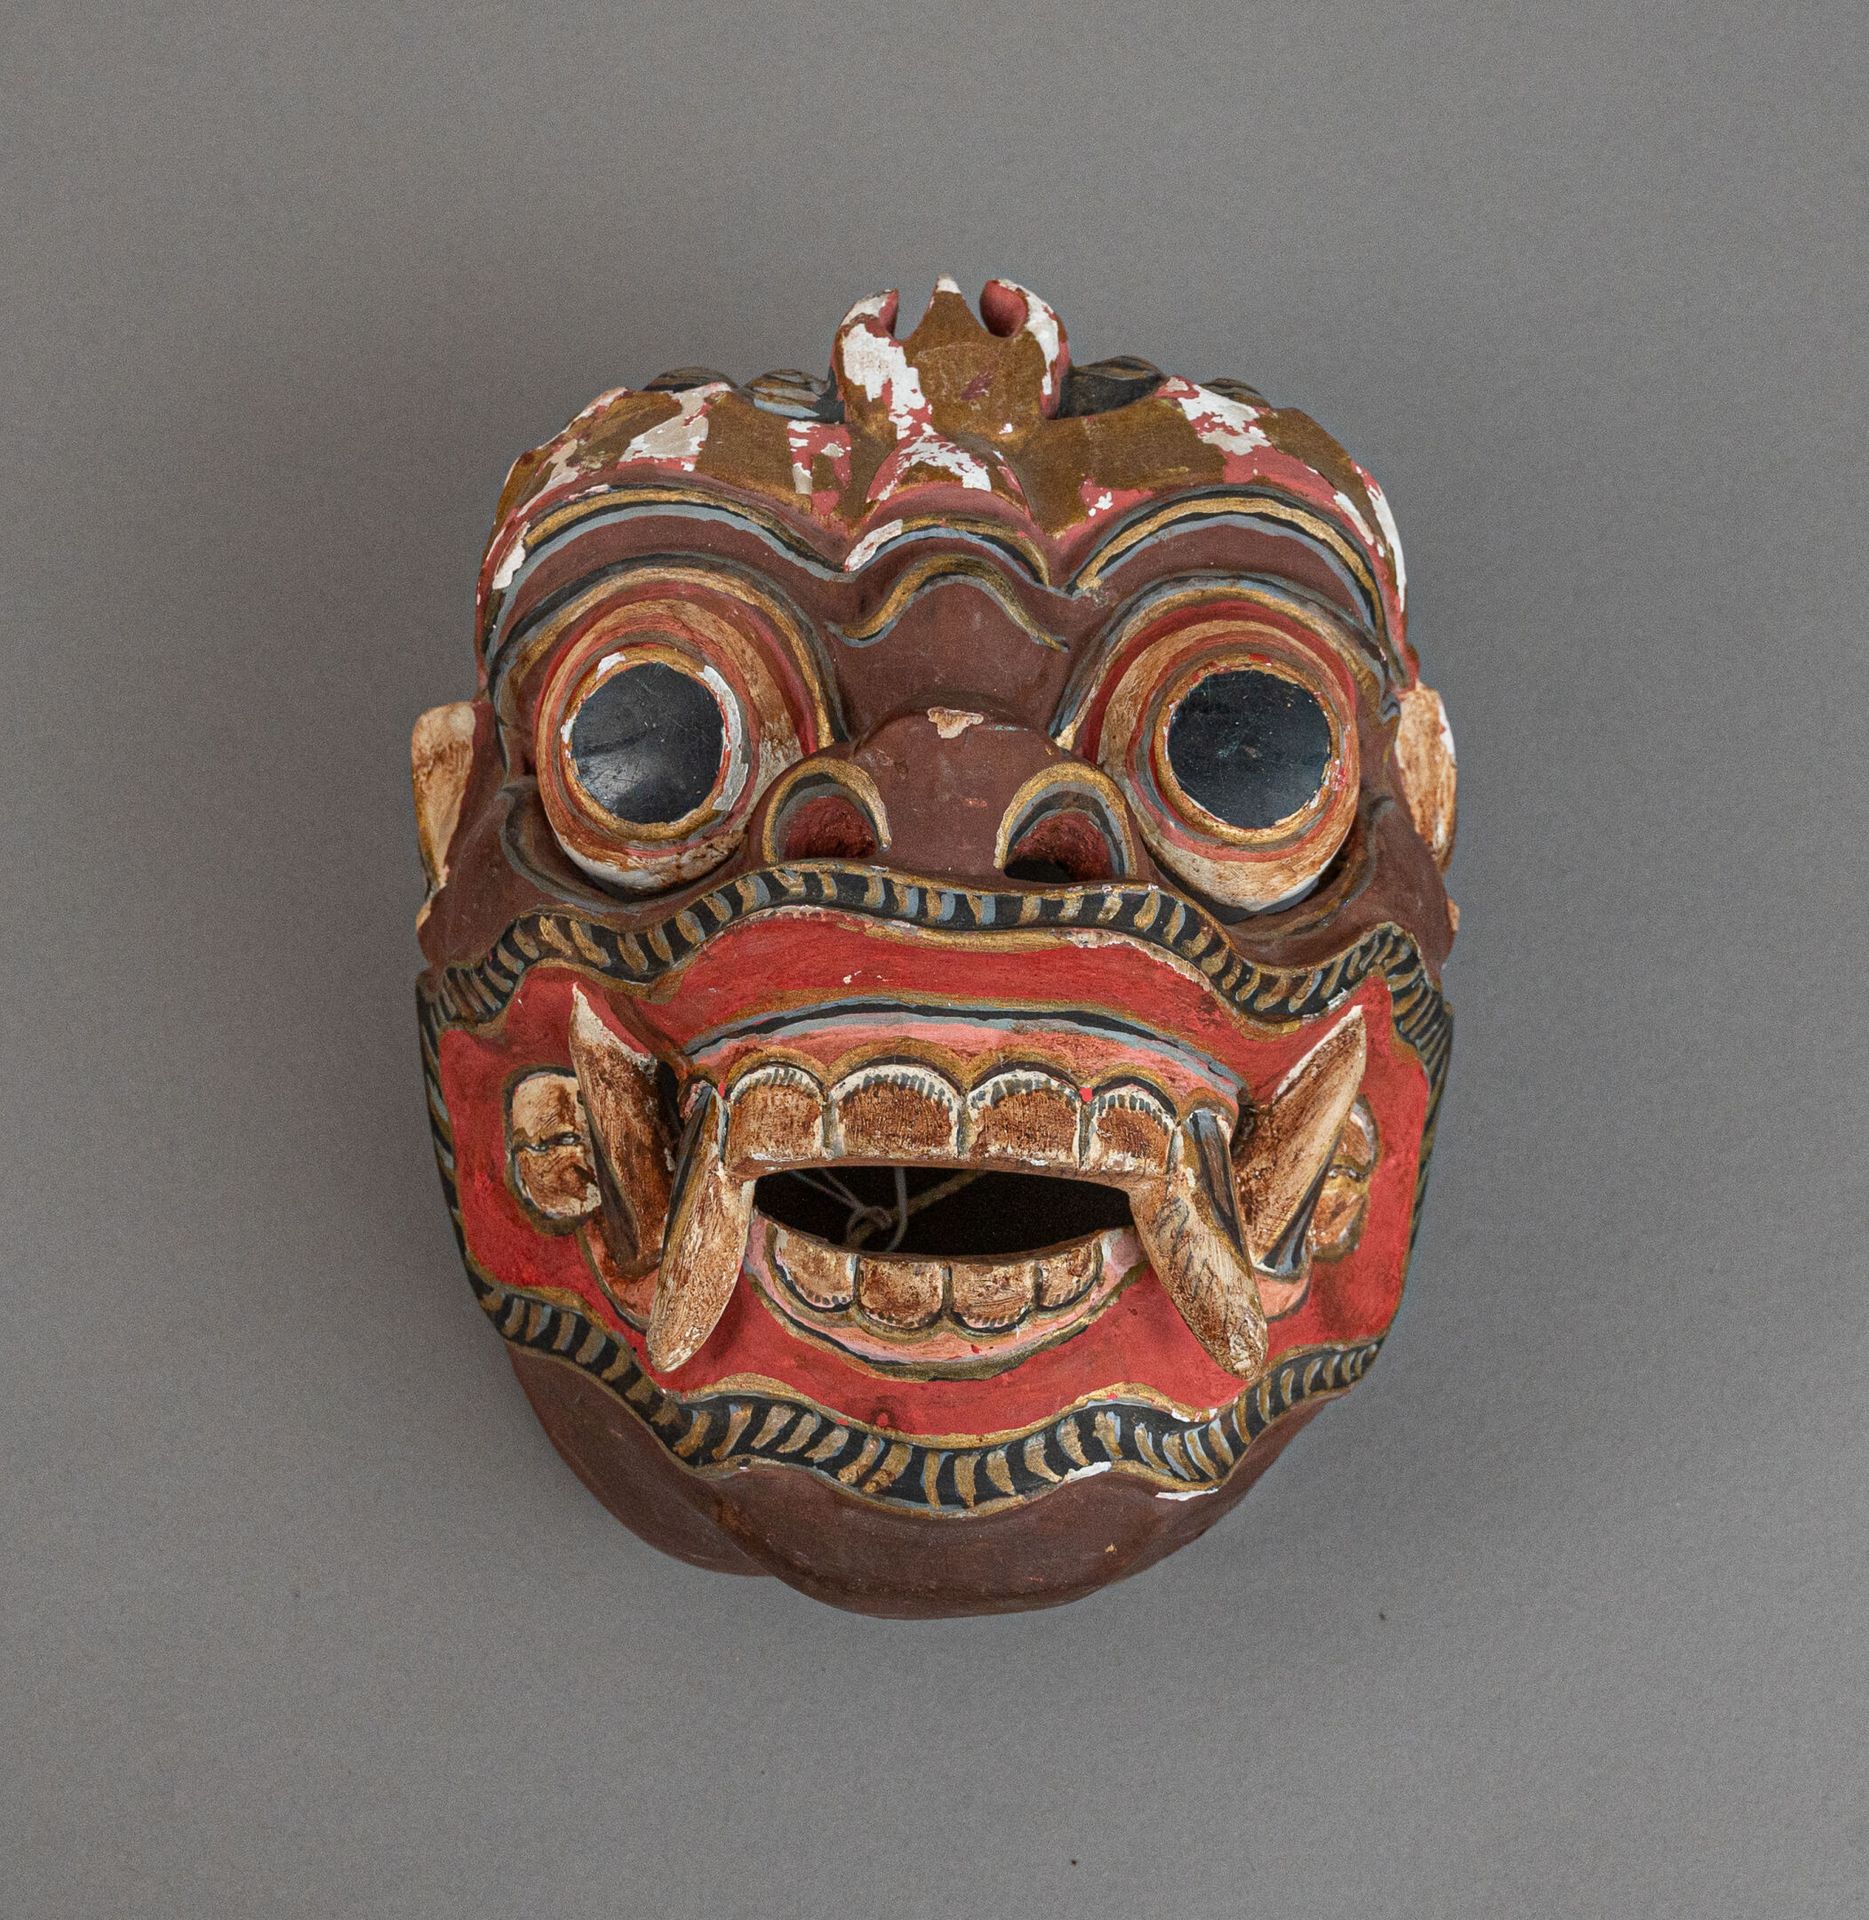 Null 多色木制托彭戏剧面具，印度尼西亚巴厘岛
代表玛丽卡，棕色皮肤，突出的眼睛和獠牙。 
有缺口和磨损
H.20 厘米 - 17 厘米